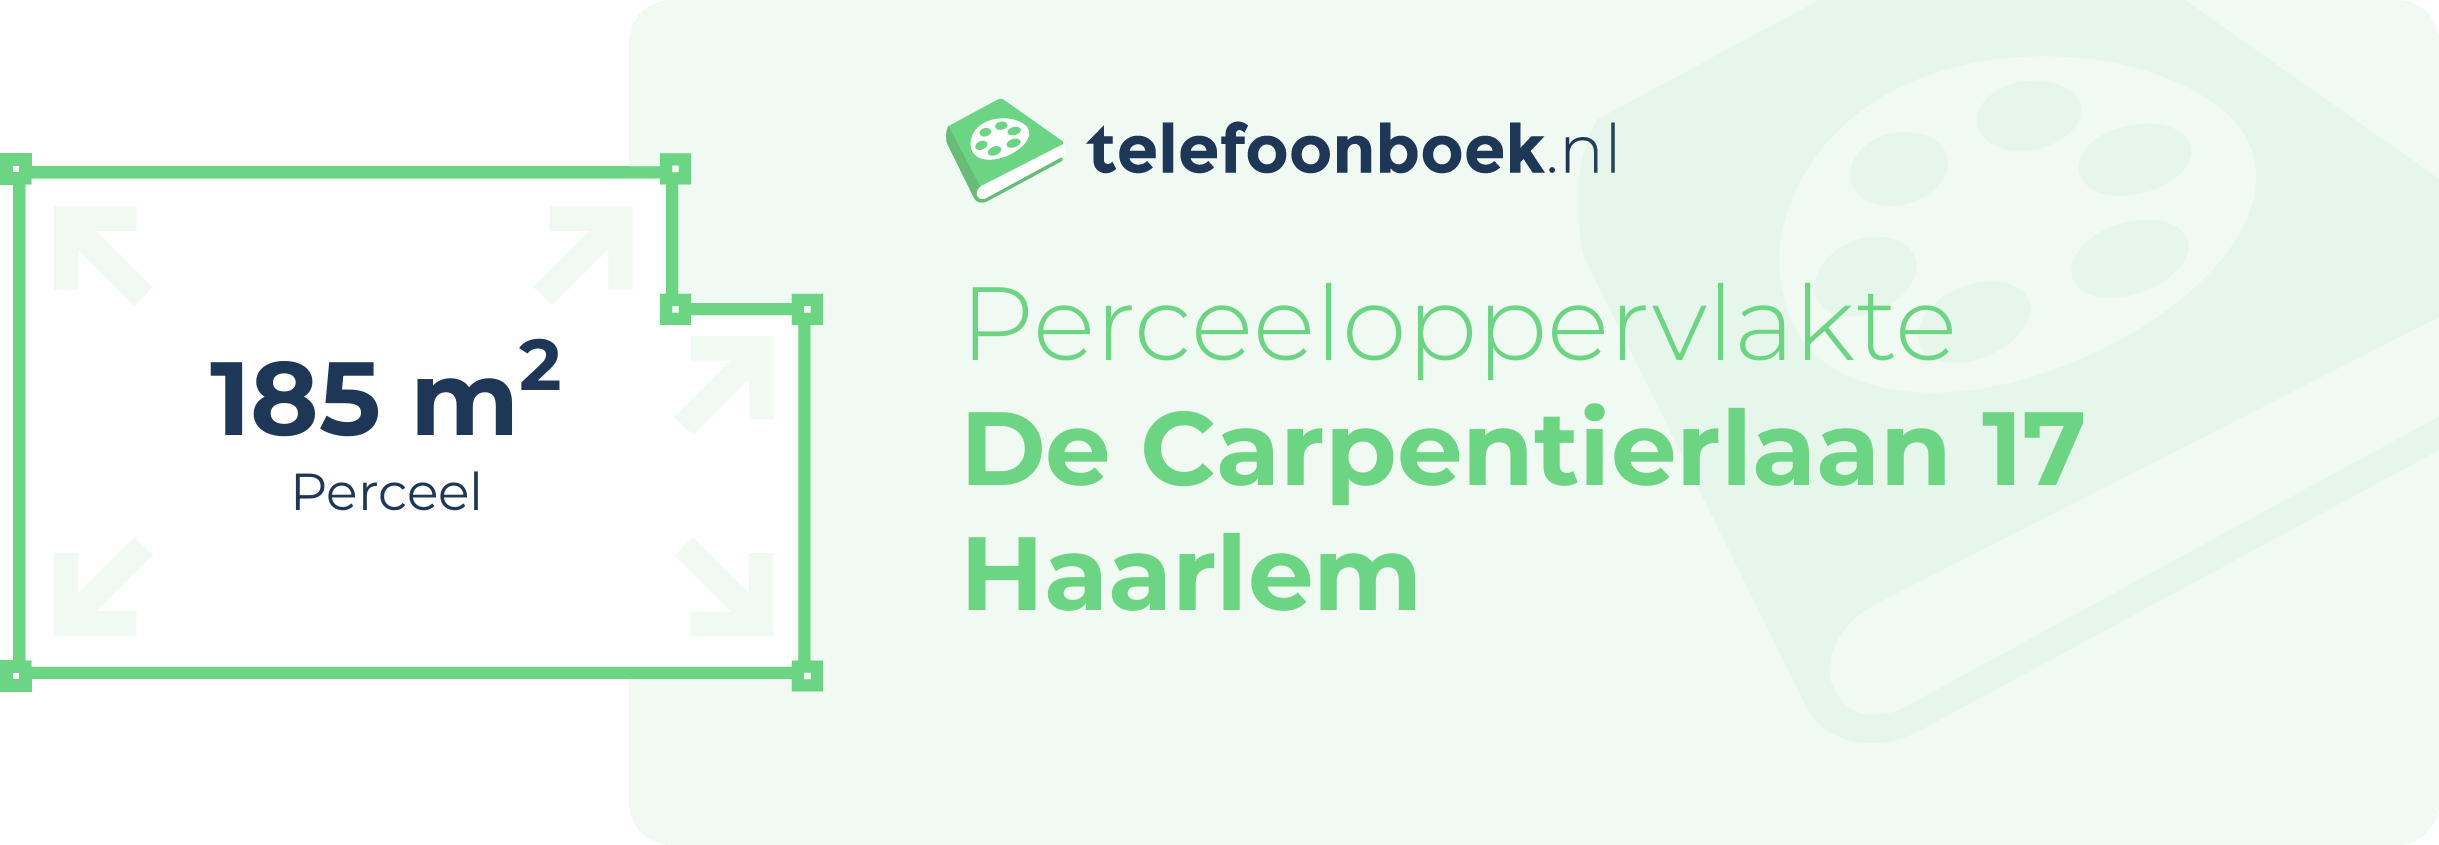 Perceeloppervlakte De Carpentierlaan 17 Haarlem